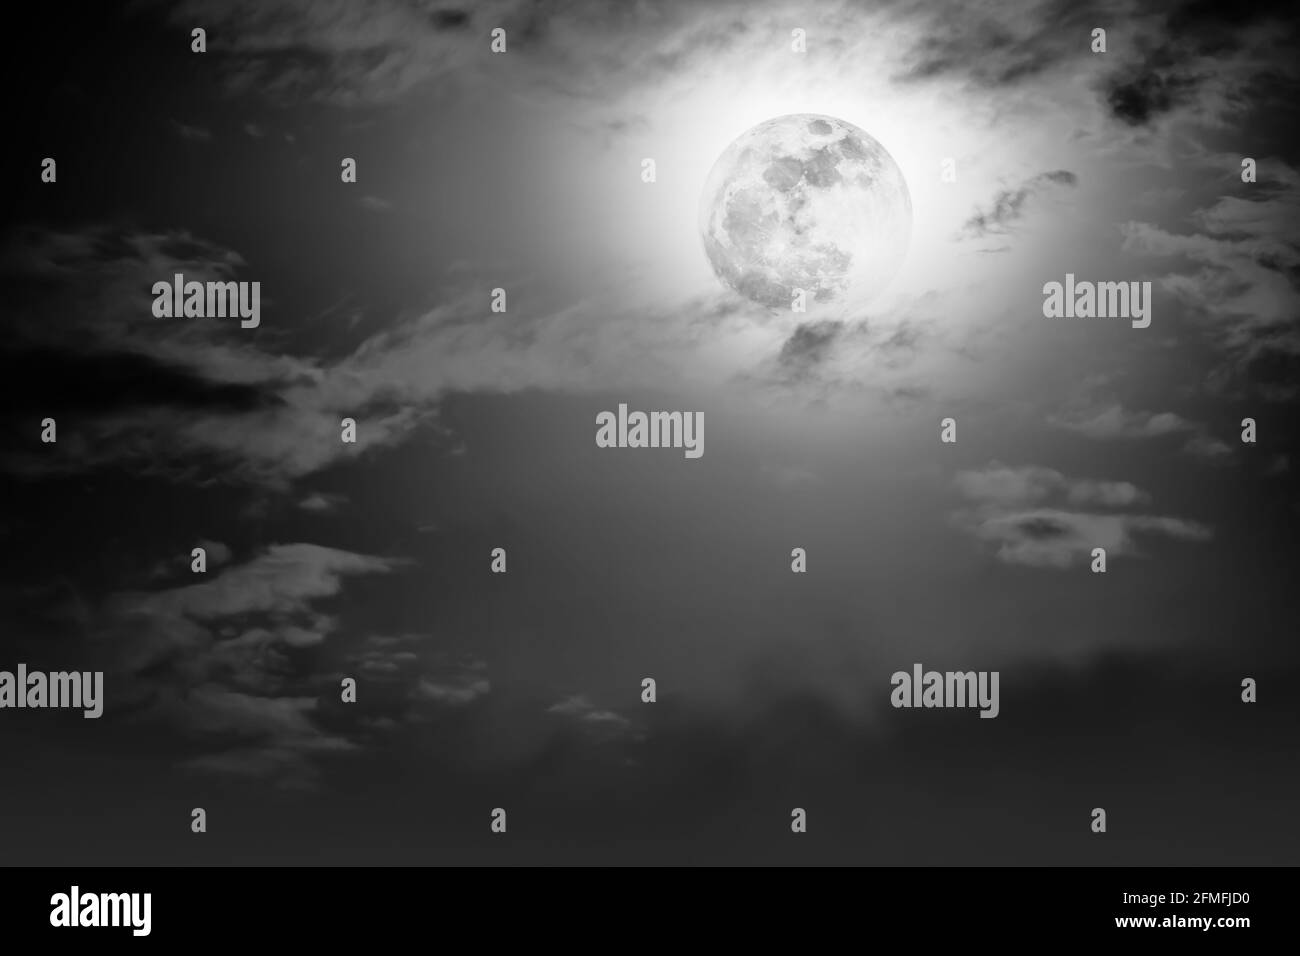 Hintergrund des Nachthimmels mit Wolke und Vollmond mit Glanz. Natürliche Schönheit bei Nacht mit Mond hinter Wolken in Schwarz-Weiß-Stil. Vintage-Effekt Stockfoto